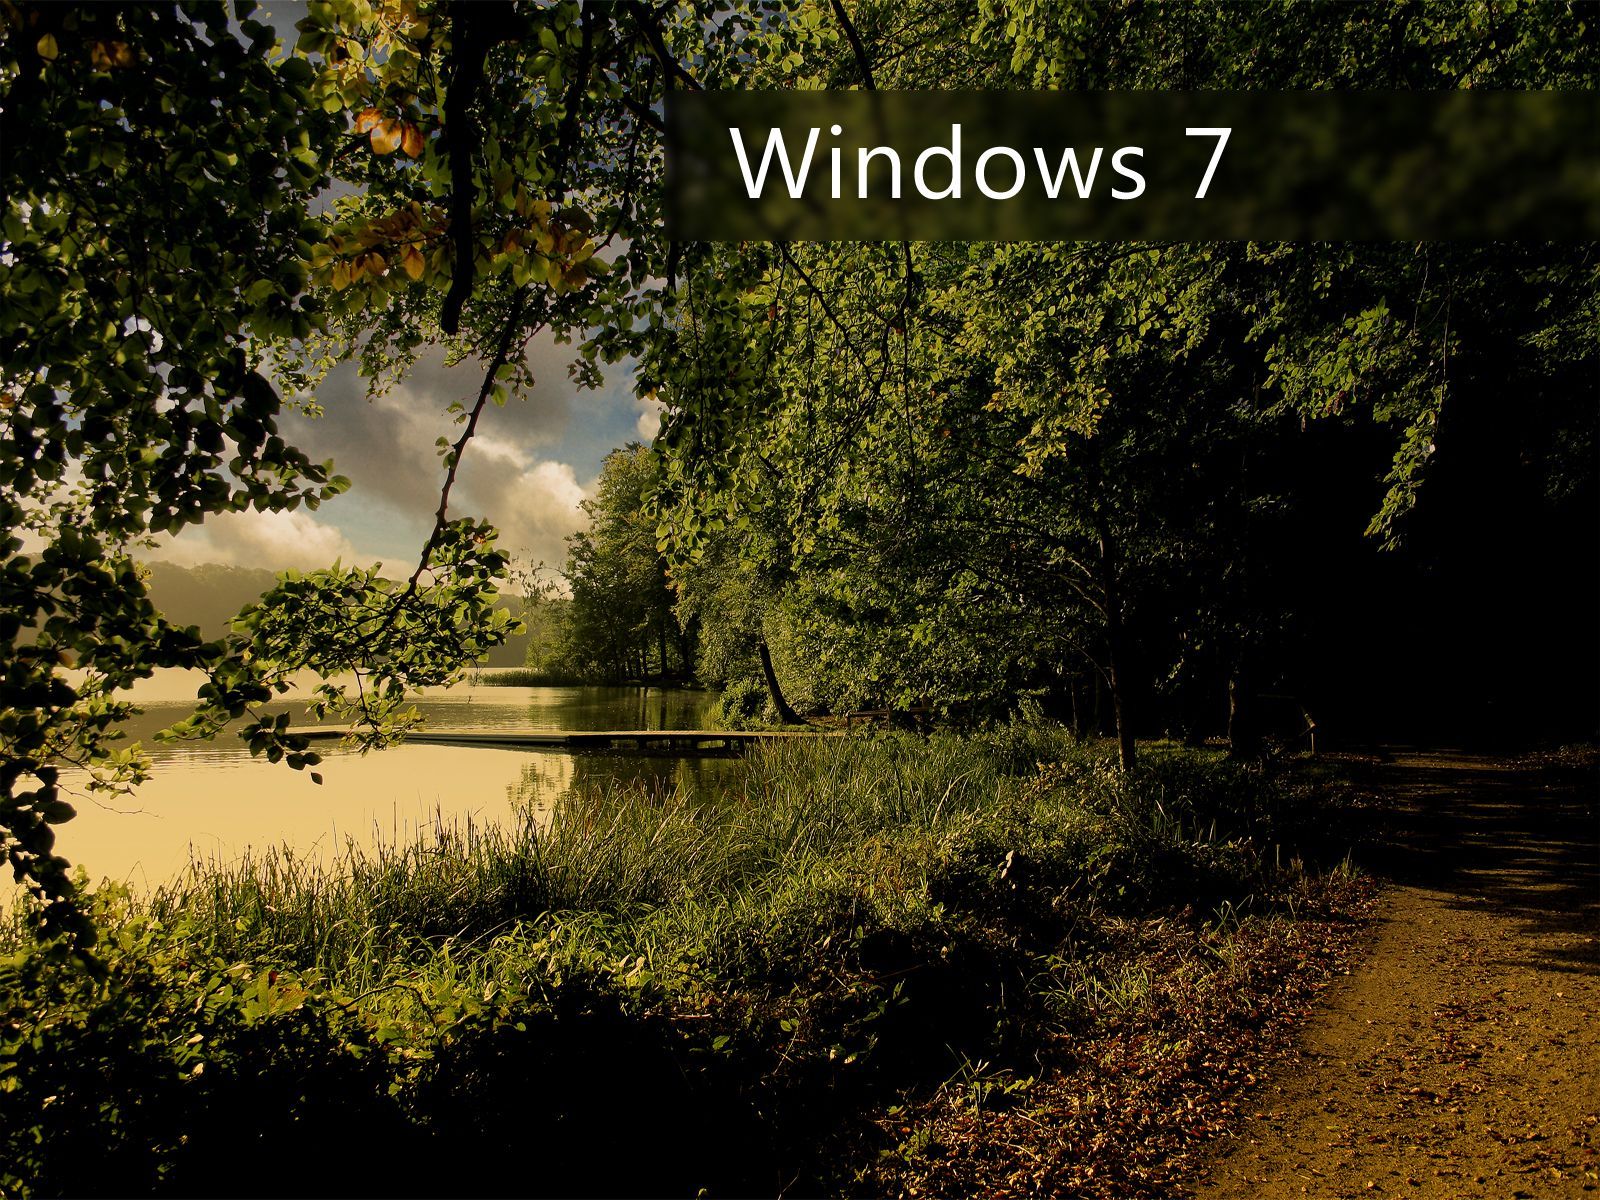 wallpaper-best-size: Windows 7 Nature wallpaper